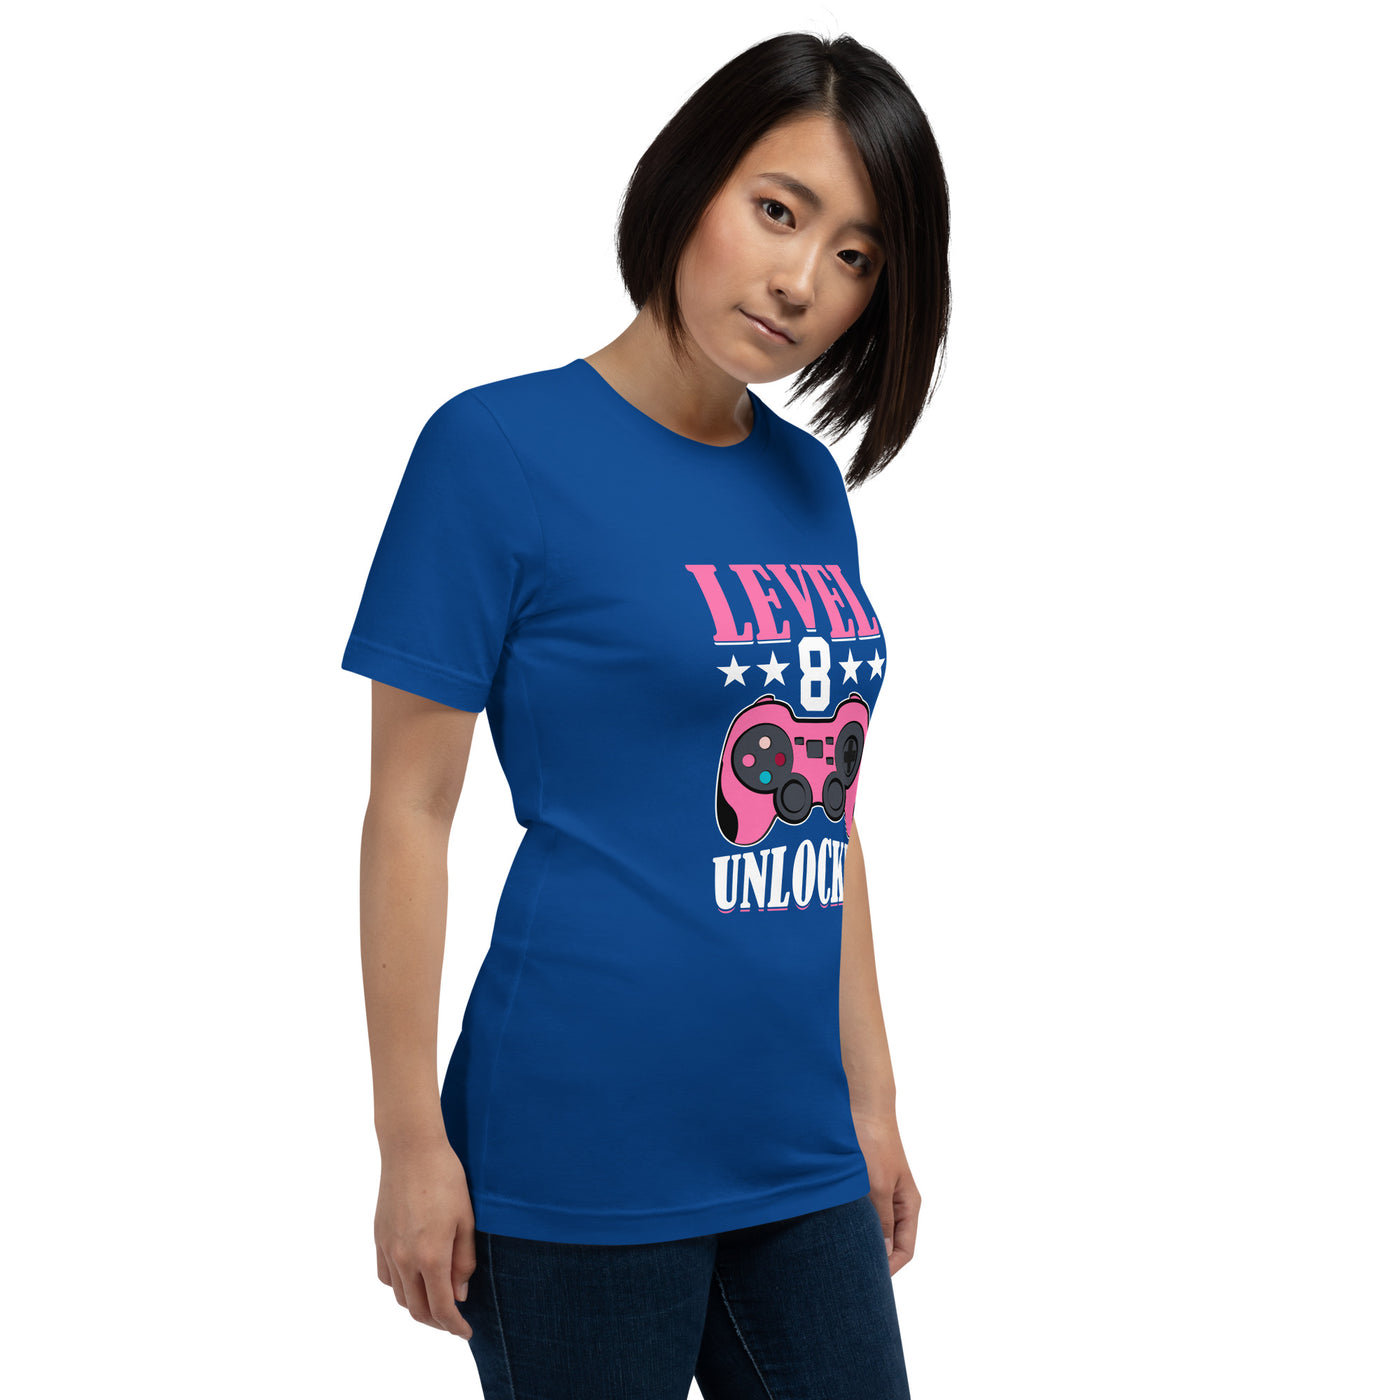 Level 8 Unlocked - Unisex t-shirt